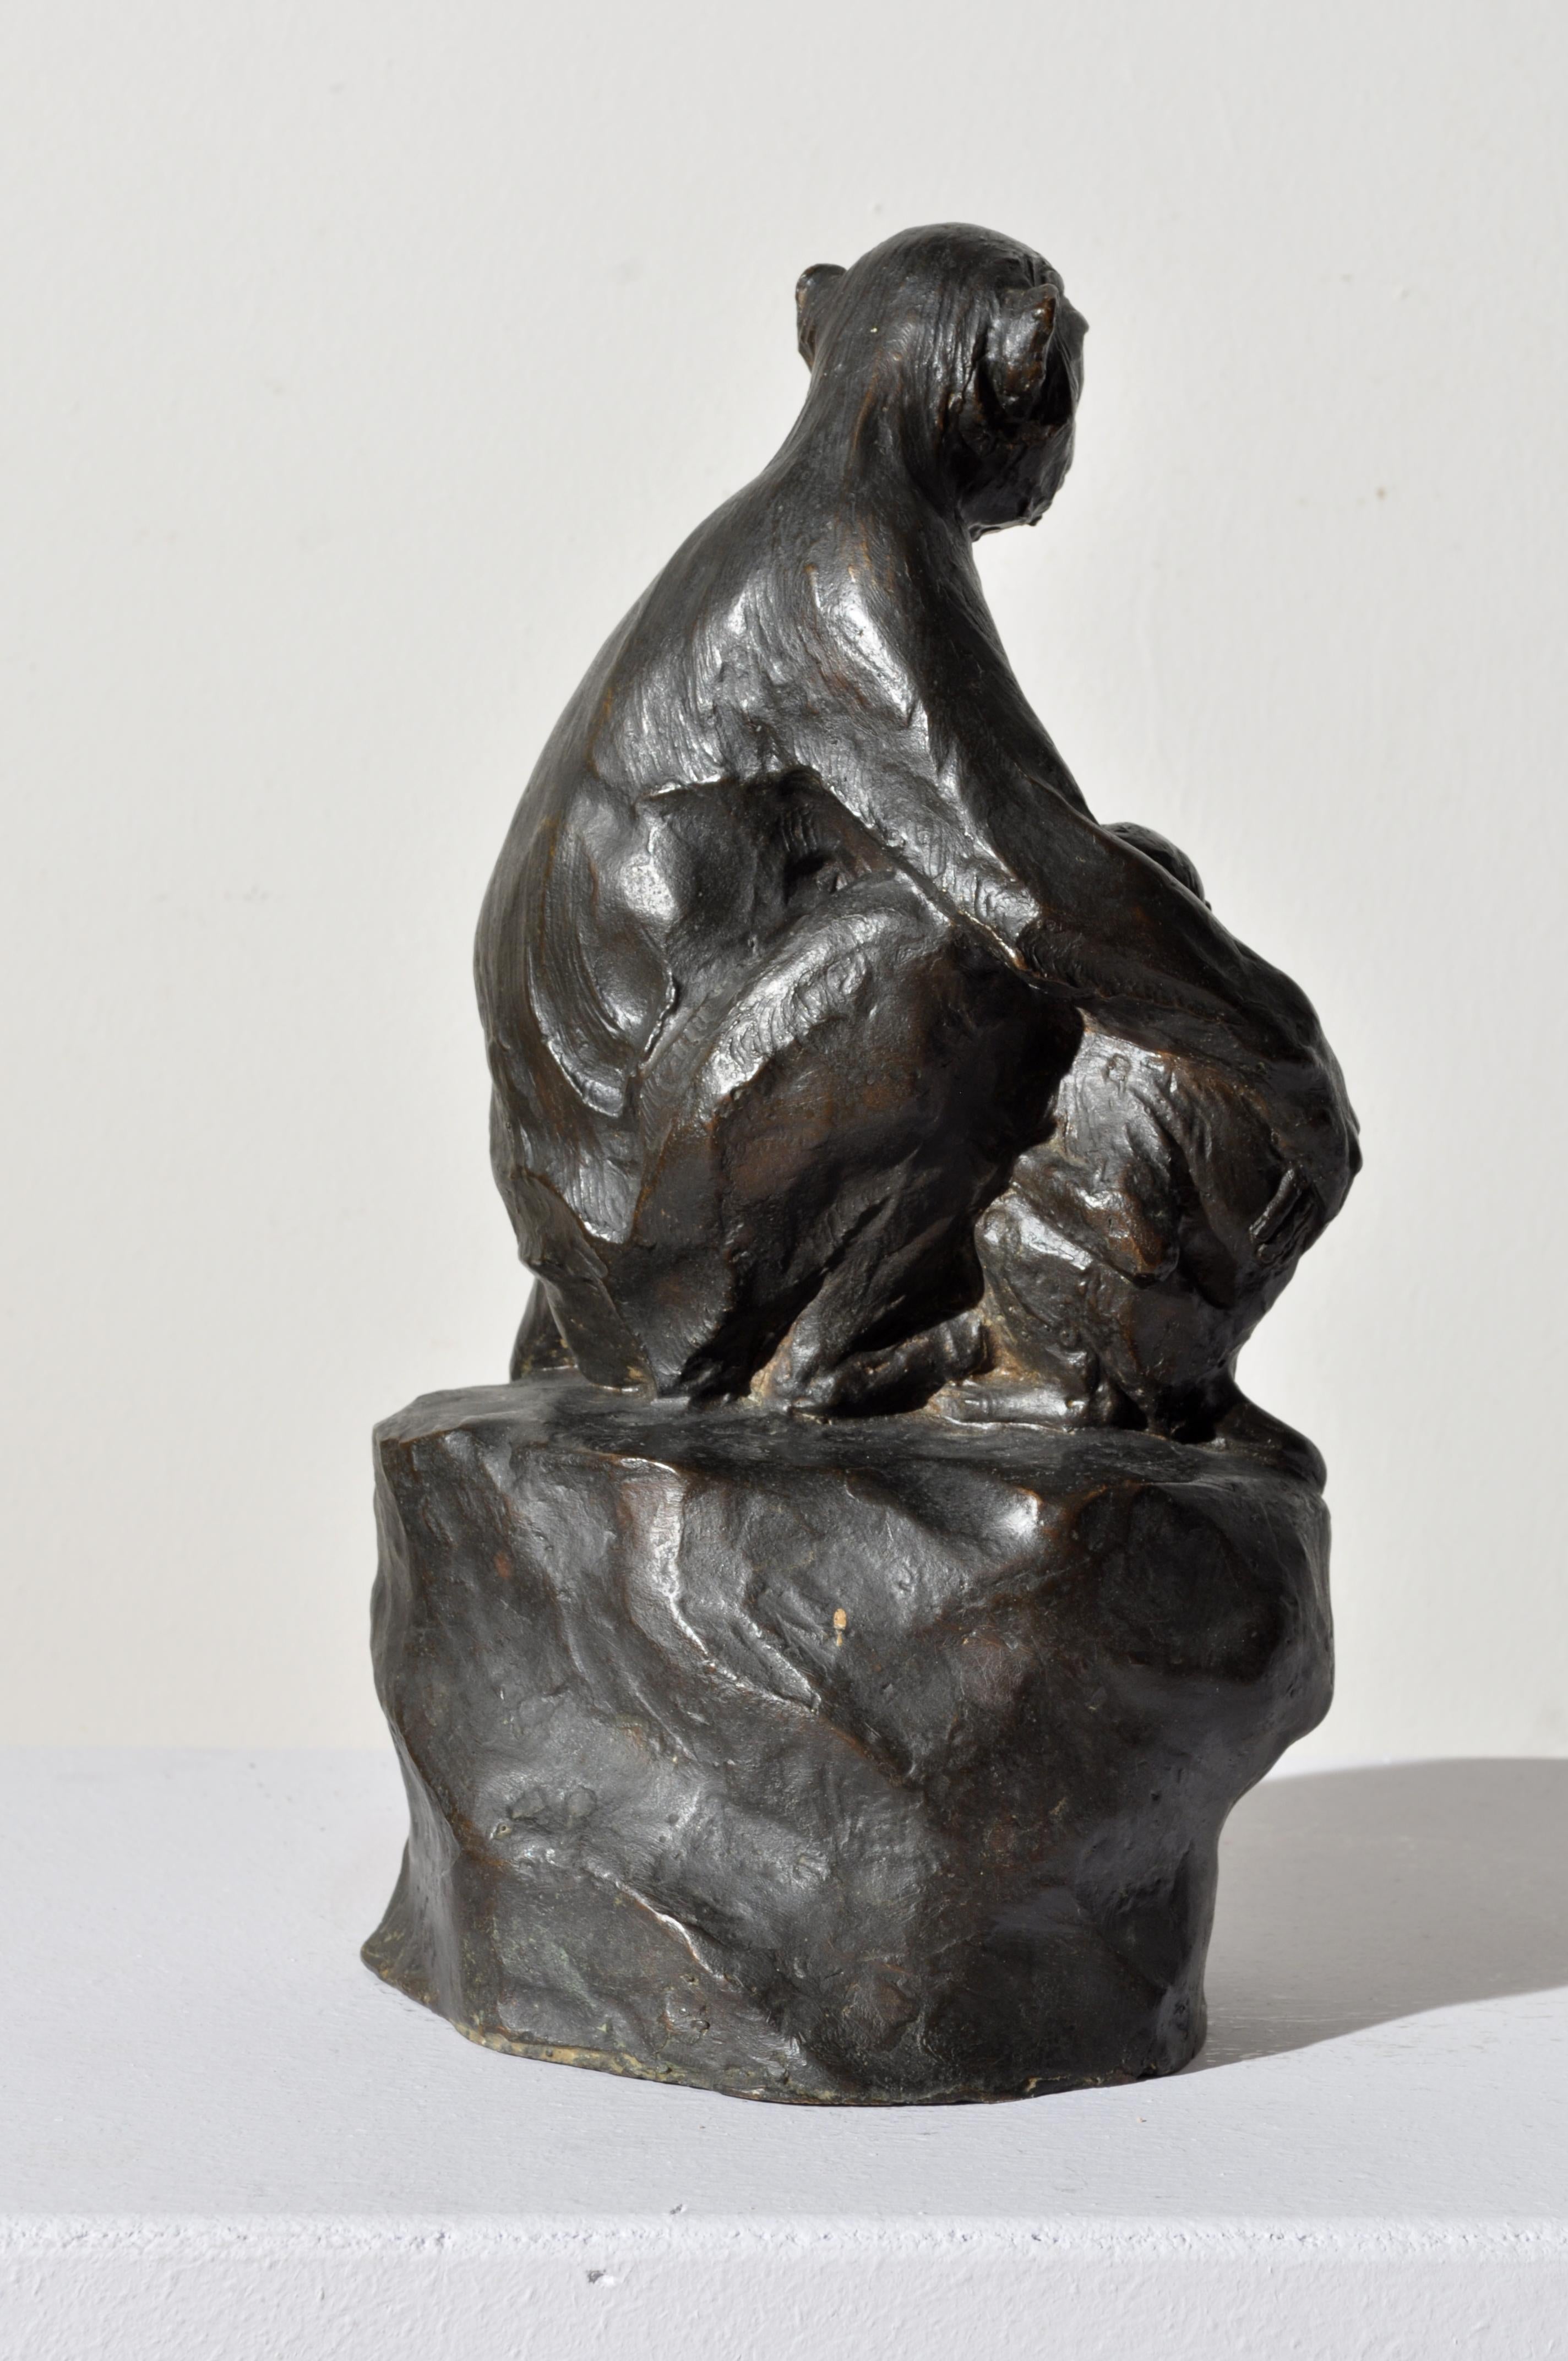 FERDINANDO VICHI
(Florenz, 1875 - 1941)

Makaken, um 1910
bronze, Höhe 32 cm

Signiert am Sockel 'F.Vichi'.

Bibliographie: Renato Brozzi und die italienische Tierskulptur zwischen dem 19. und 20. Jahrhundert, Ausstellungskatalog, herausgegeben von